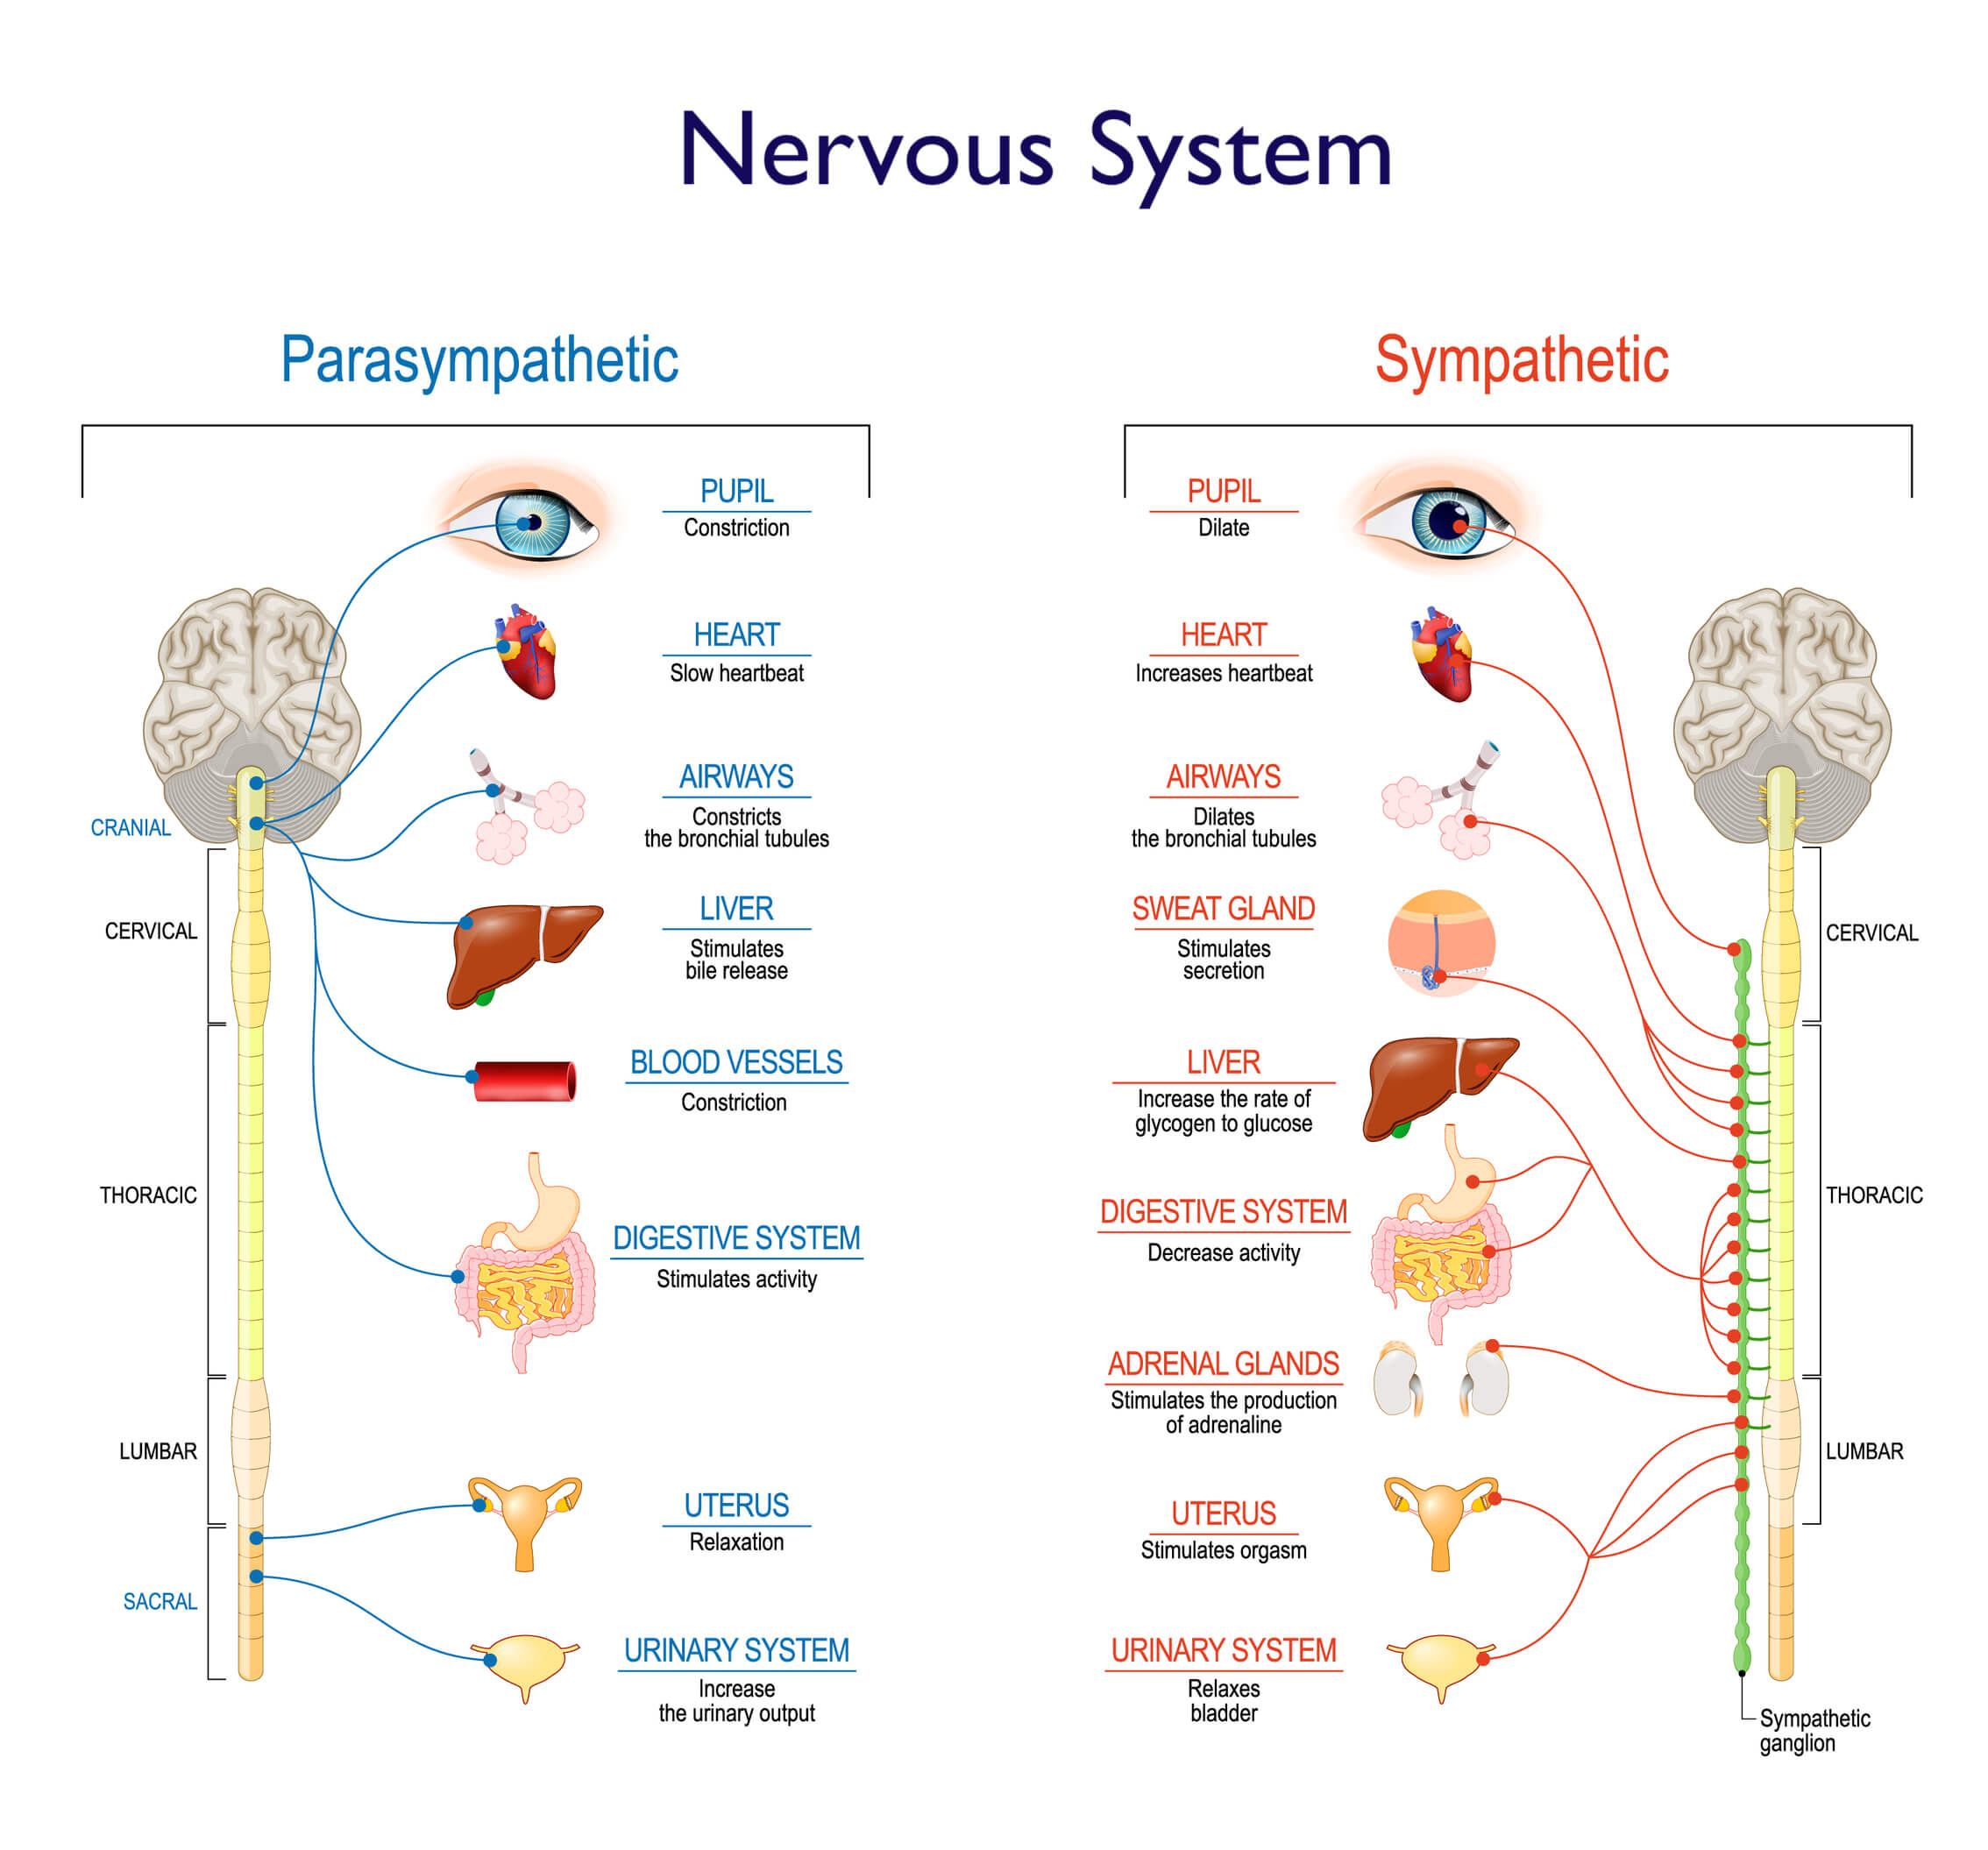 Nervous System: Parasympathetic vs Sympathetic